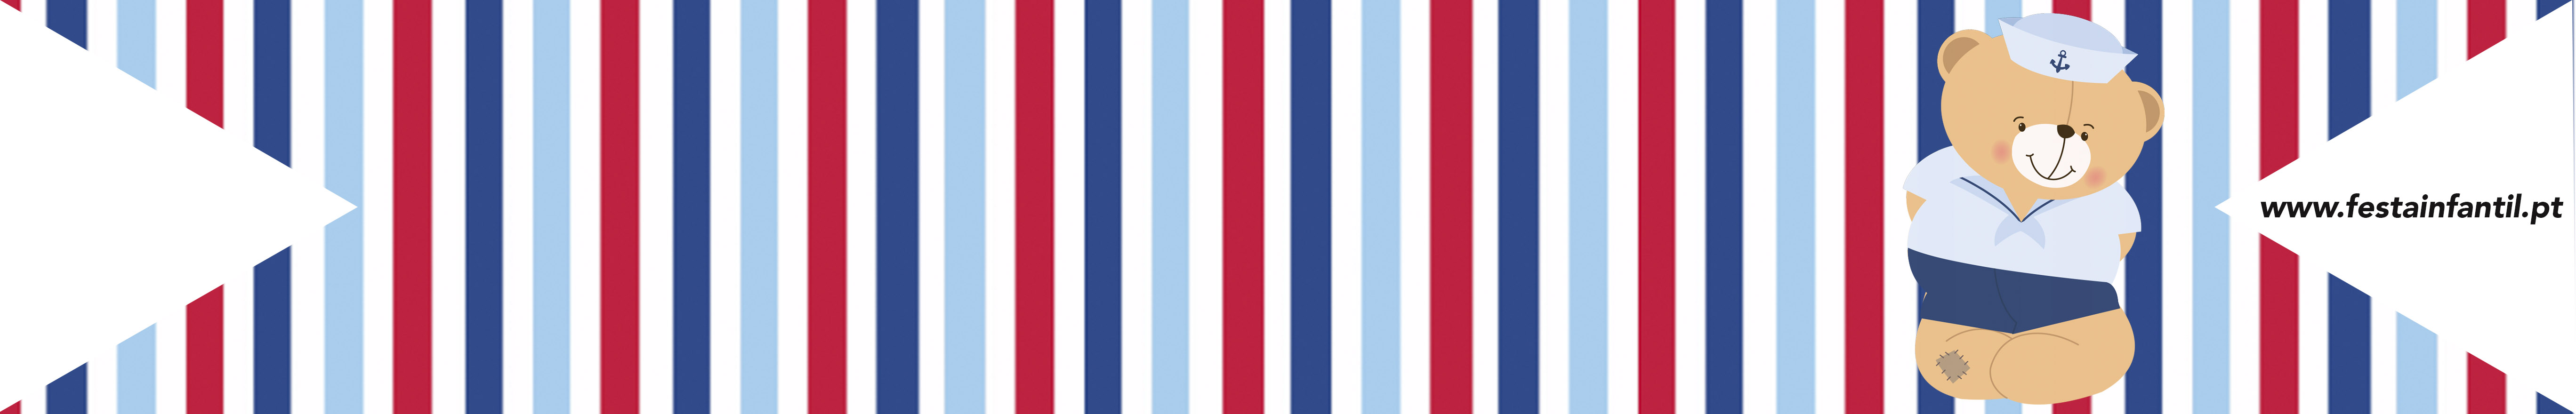 Bandeirinha para palito Ursinho Marinheiro